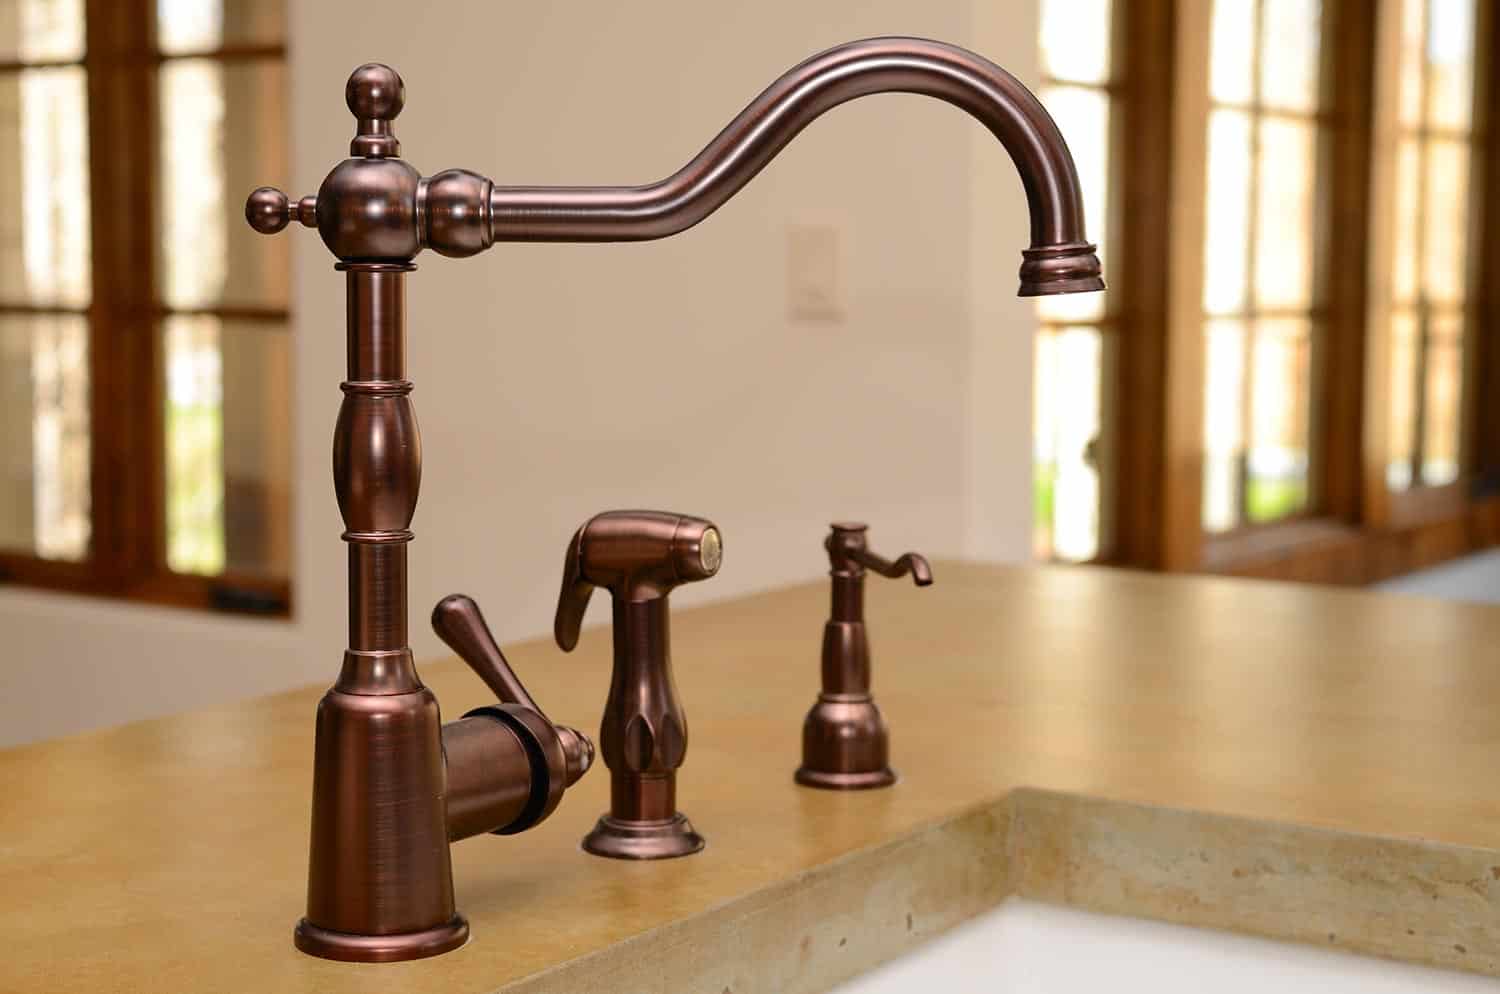 Copper kitchen faucet